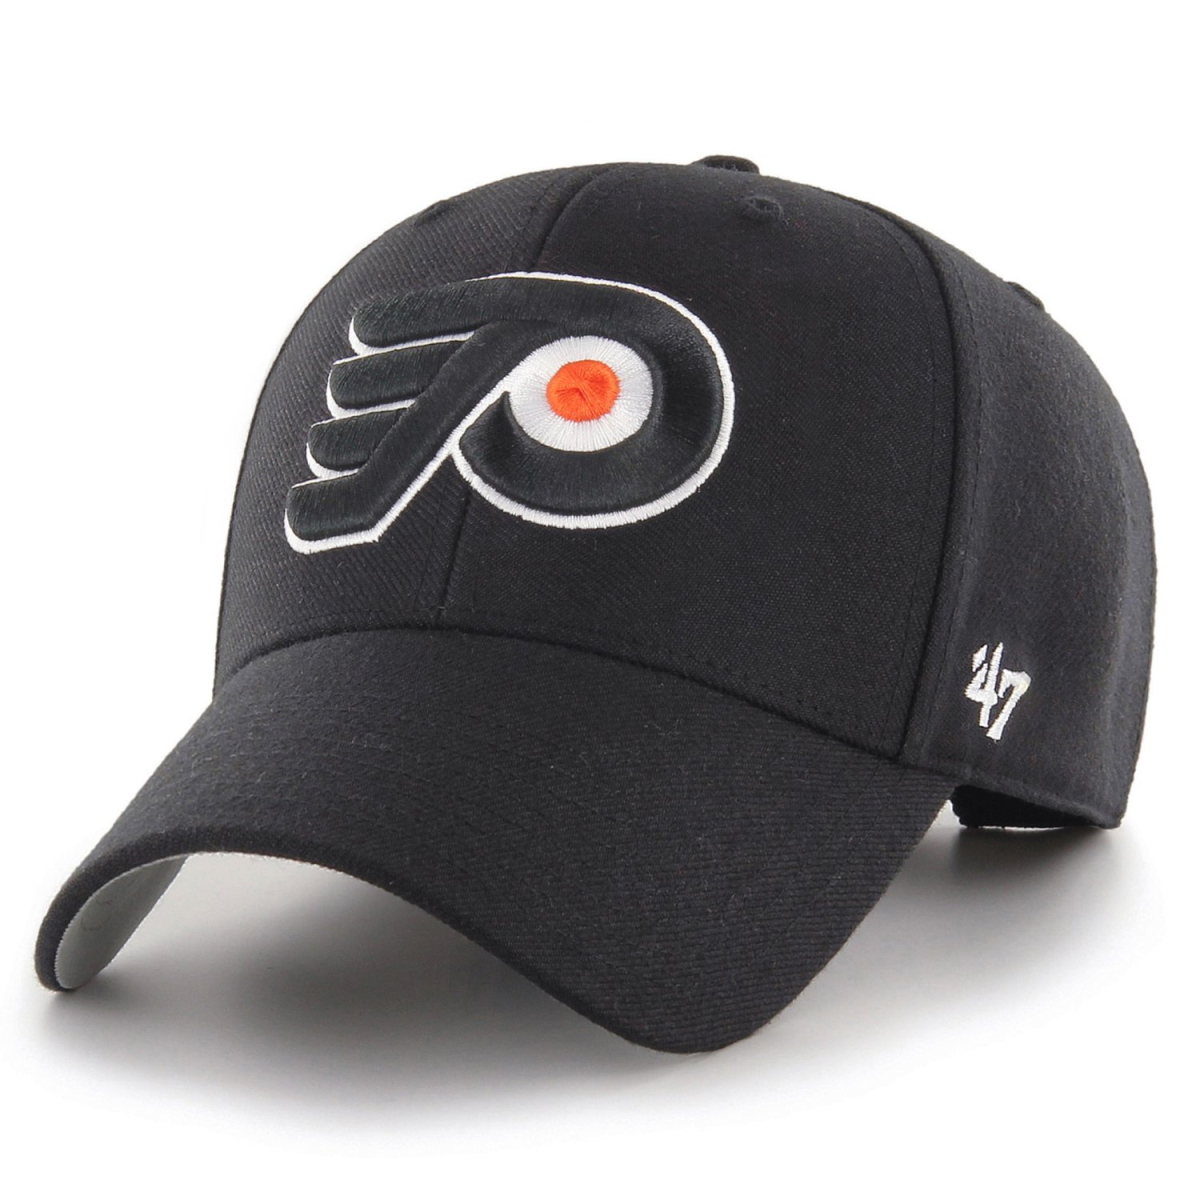 Philadelphia Flyers czapka baseballówka 47 MVP black